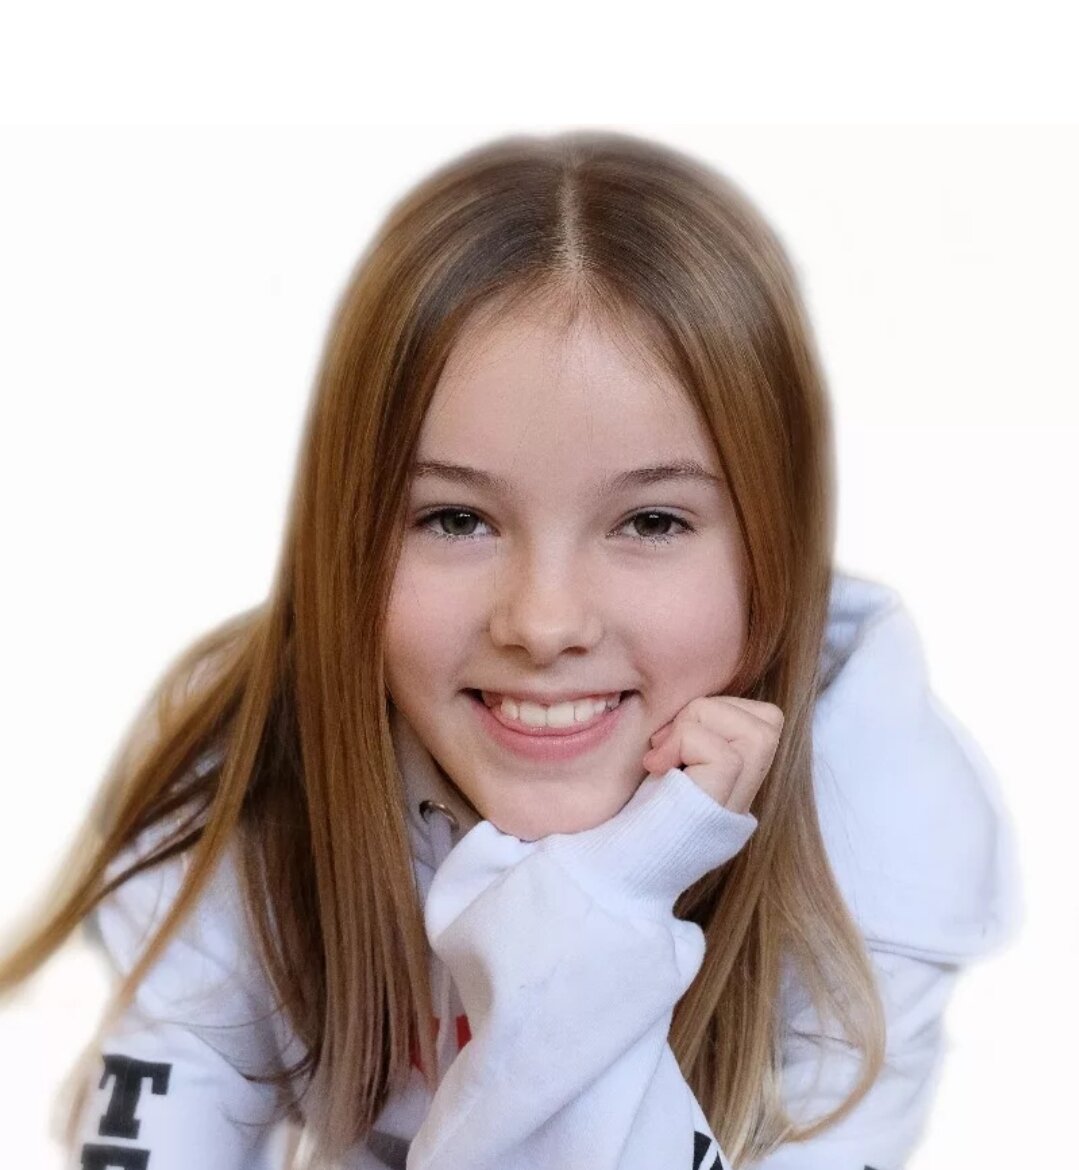 Эта видеозапись набрала в YouTube 60 миллионов просмотров!
Это начало успеха победительницы украинского "Голос. Дети" 11- летней казахстанки Данелии Тулешовой.